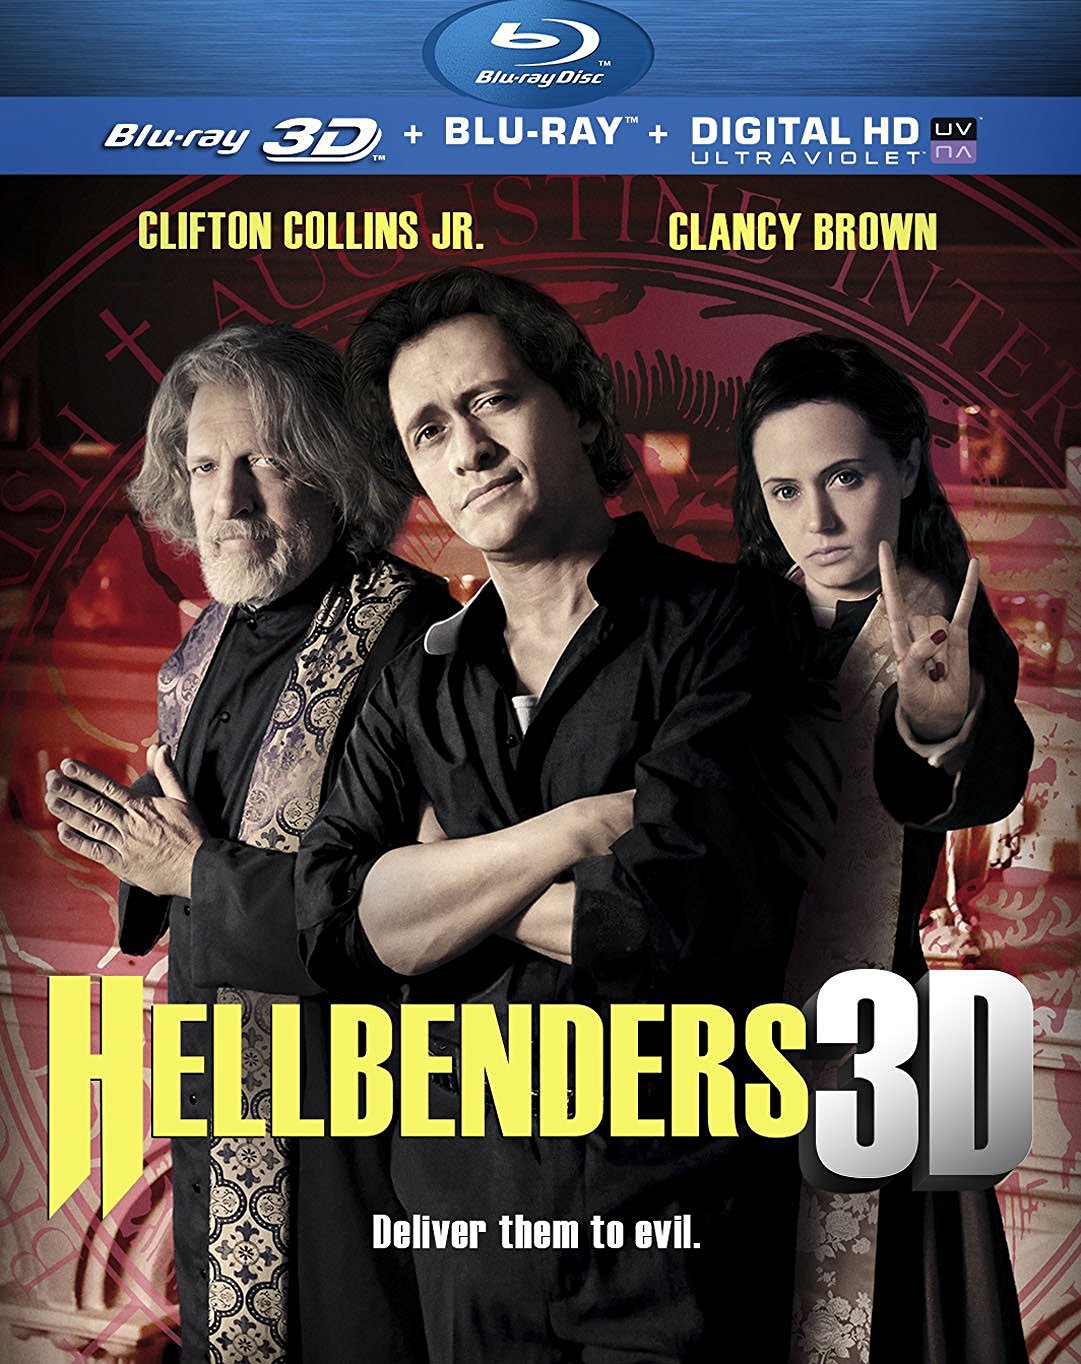 Hellbenders 3D